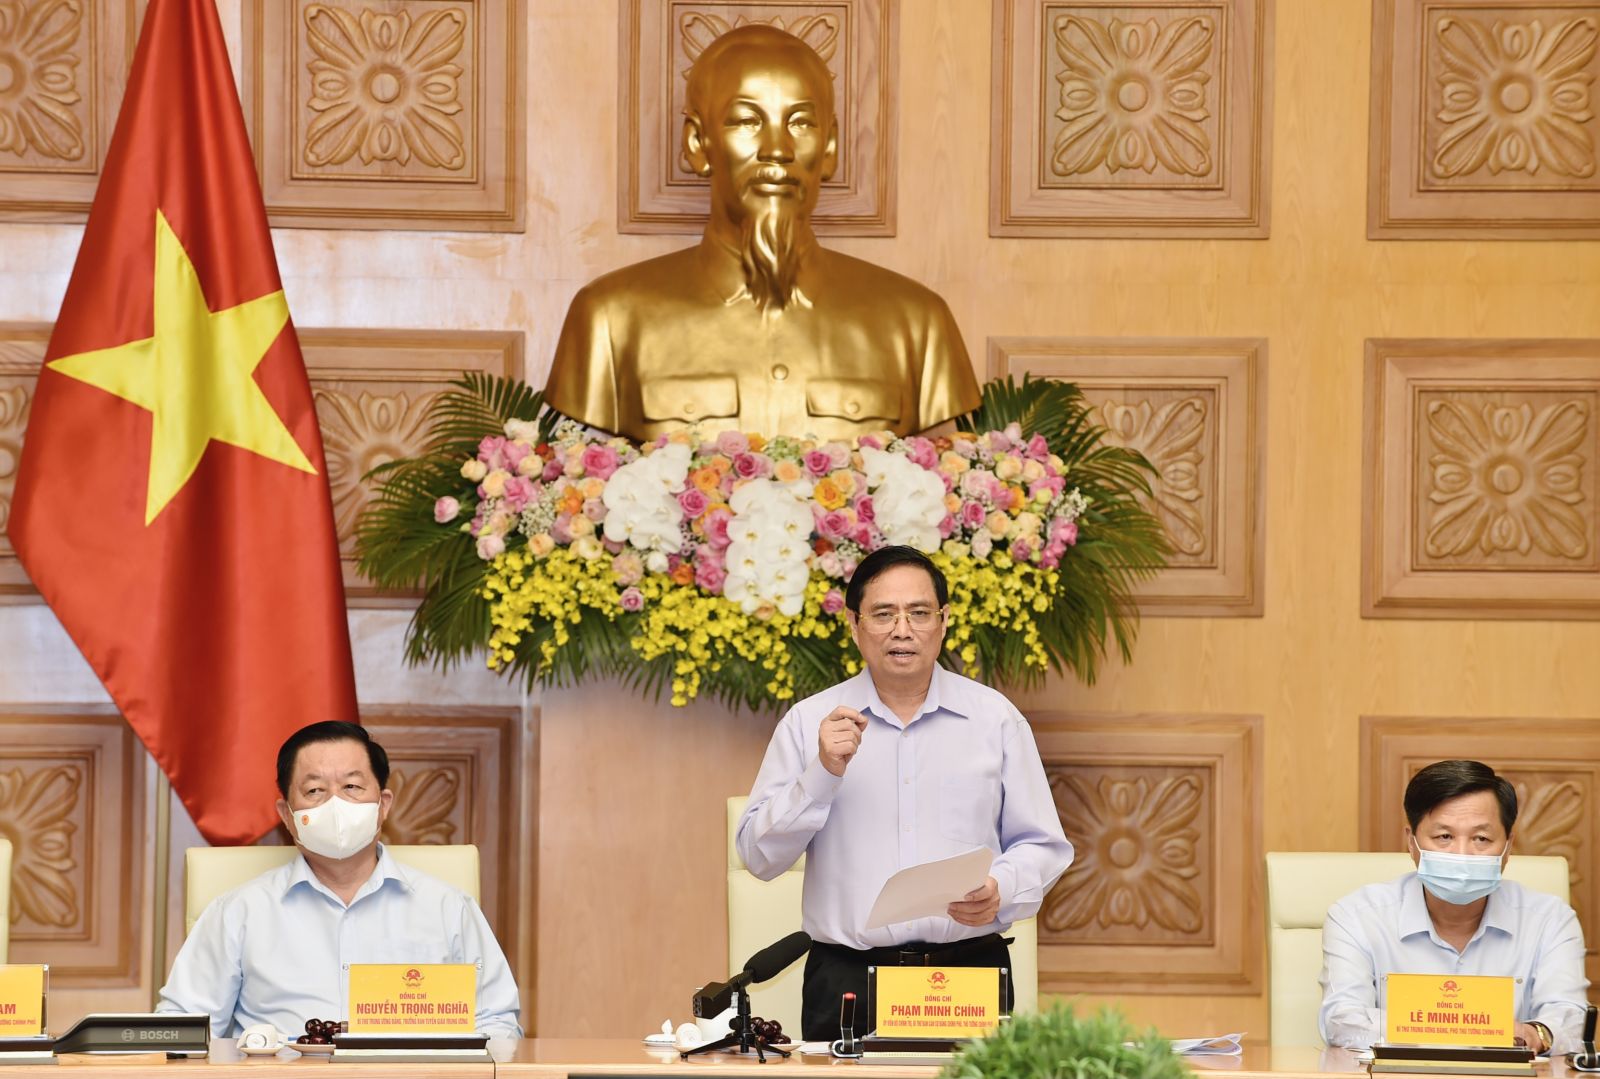 Thủ tướng Chính phủ Phạm Minh Chính: Sứ mệnh của những người làm báo đầy ý nghĩa, tự hào, vẻ vang nhưng cũng vô cùng gian nan và vất vả